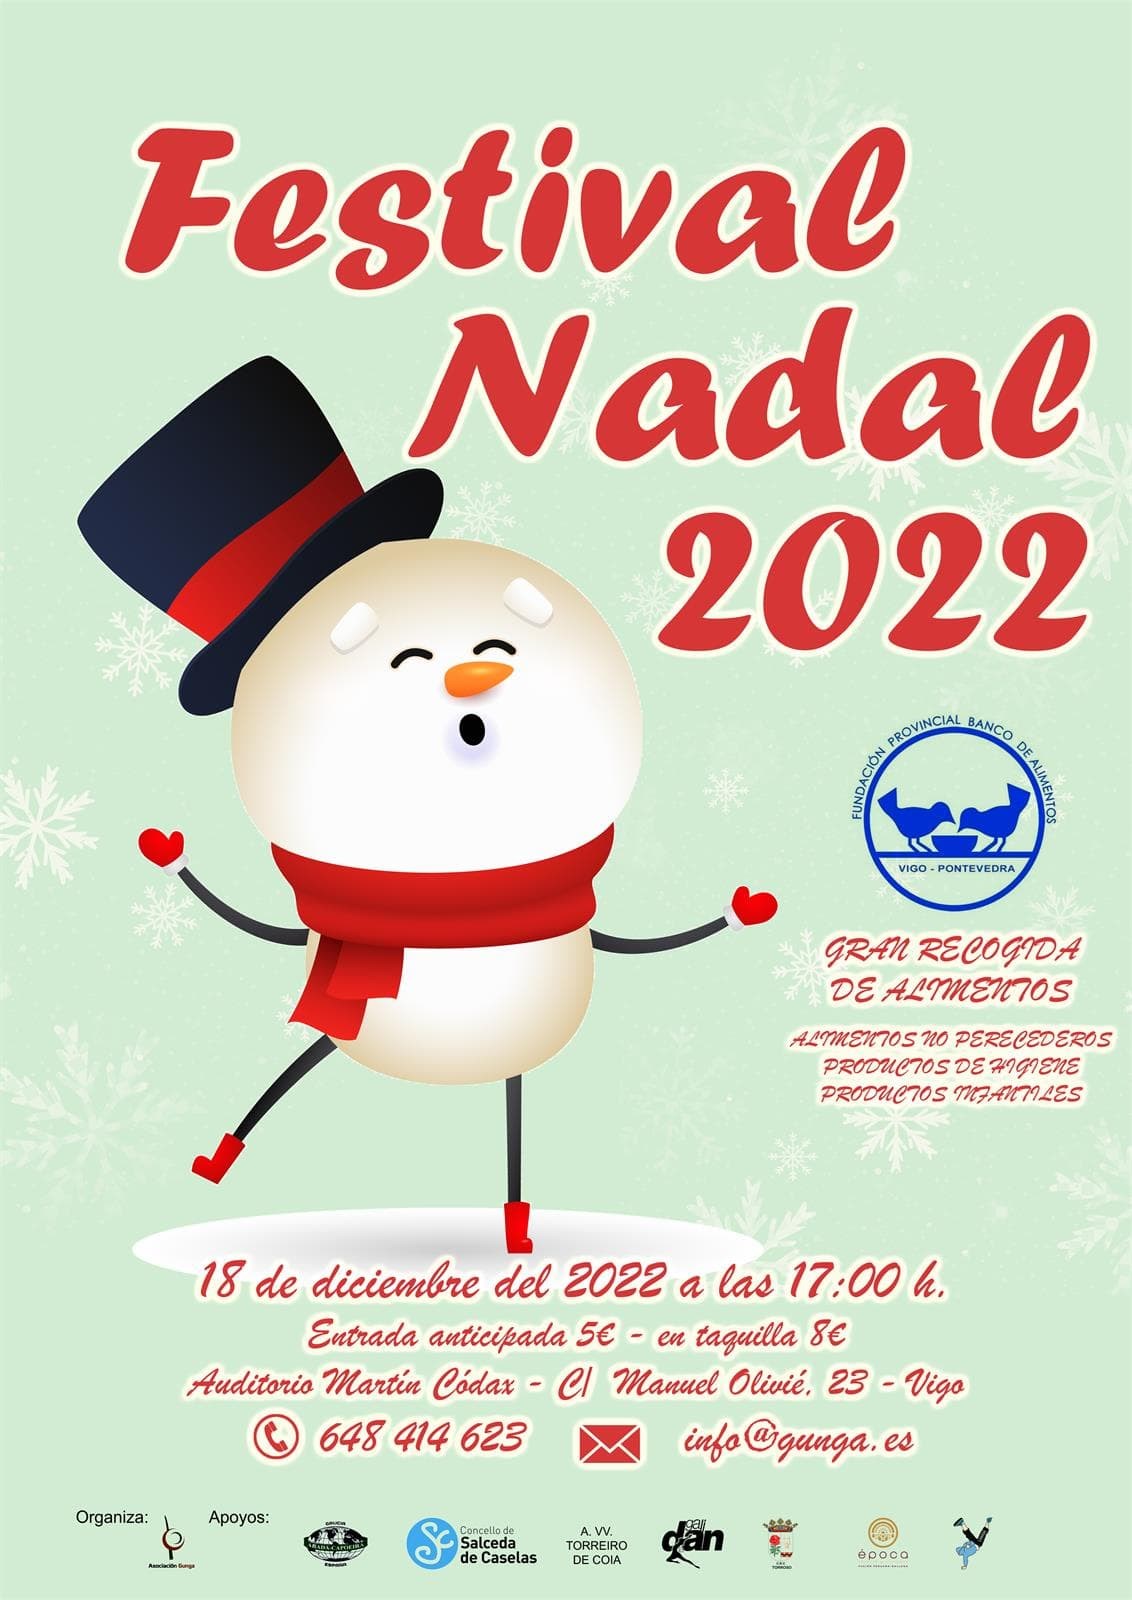 Festival Nadal 2022 - Imagen 1